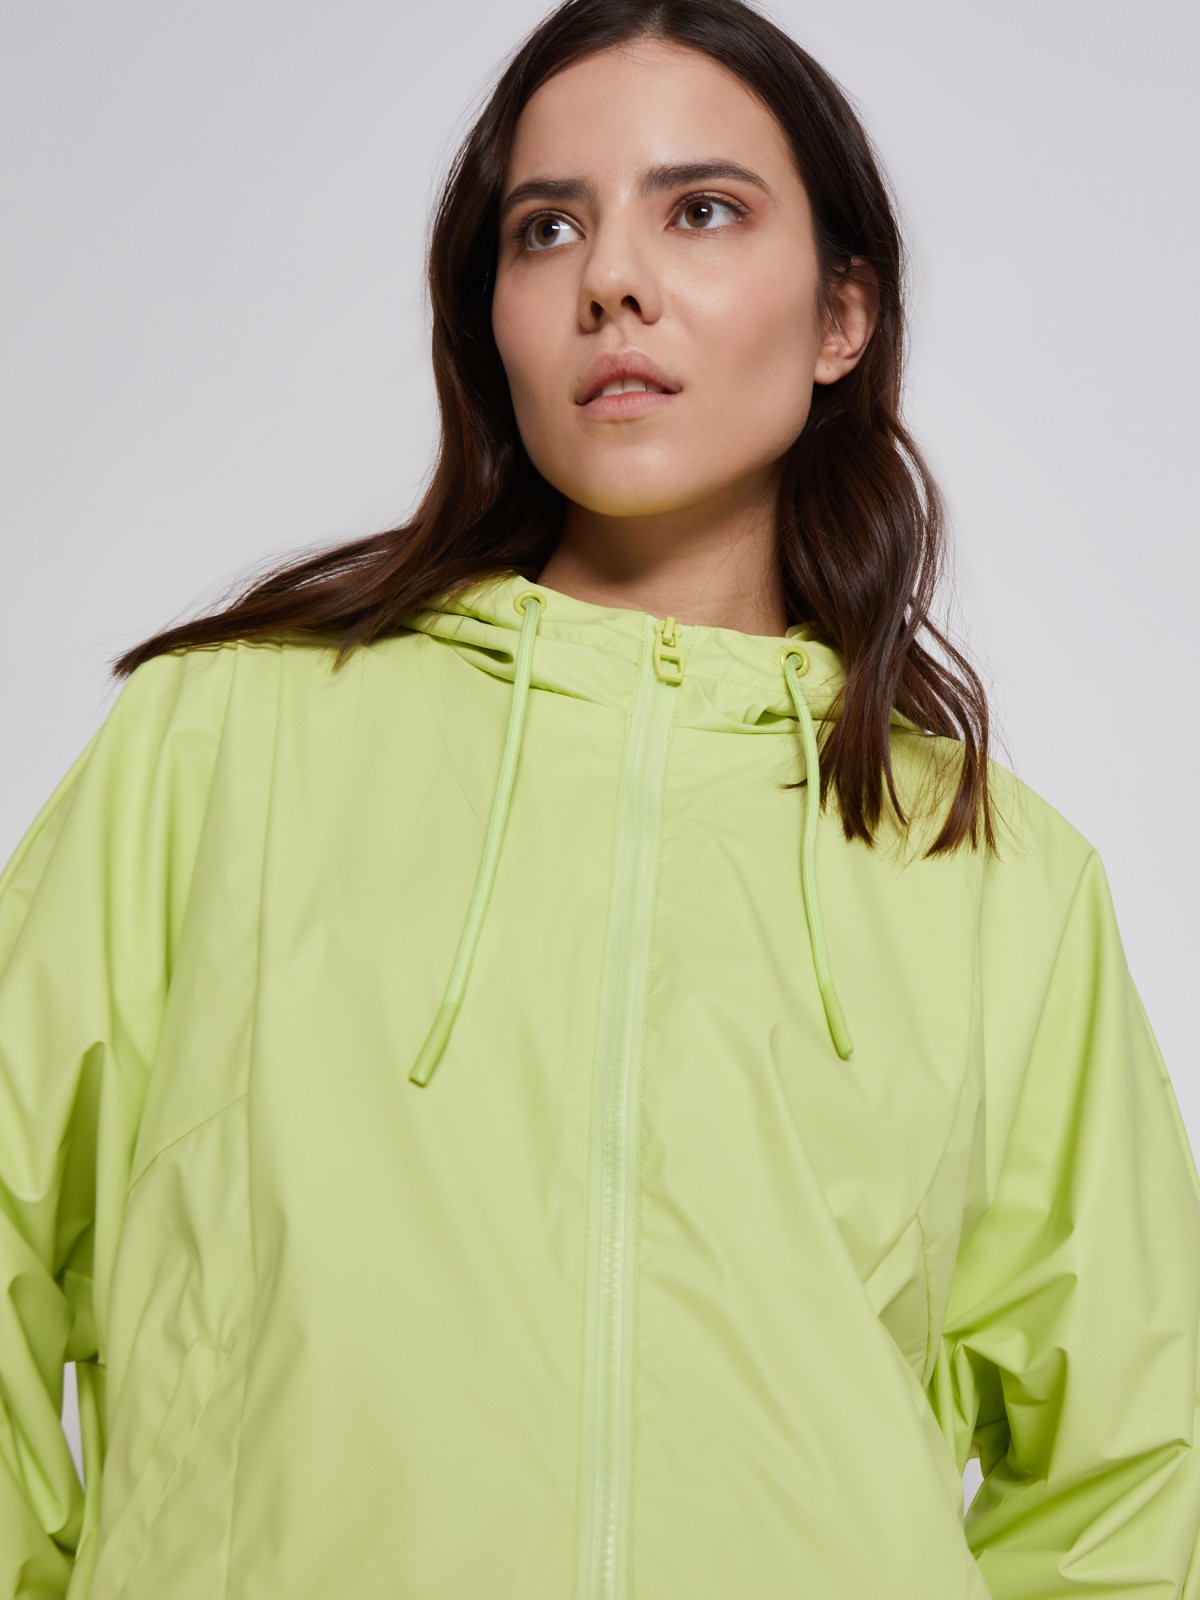 Куртка-ветровка с капюшоном zolla 02321562J034, цвет светло-зеленый, размер XS - фото 3